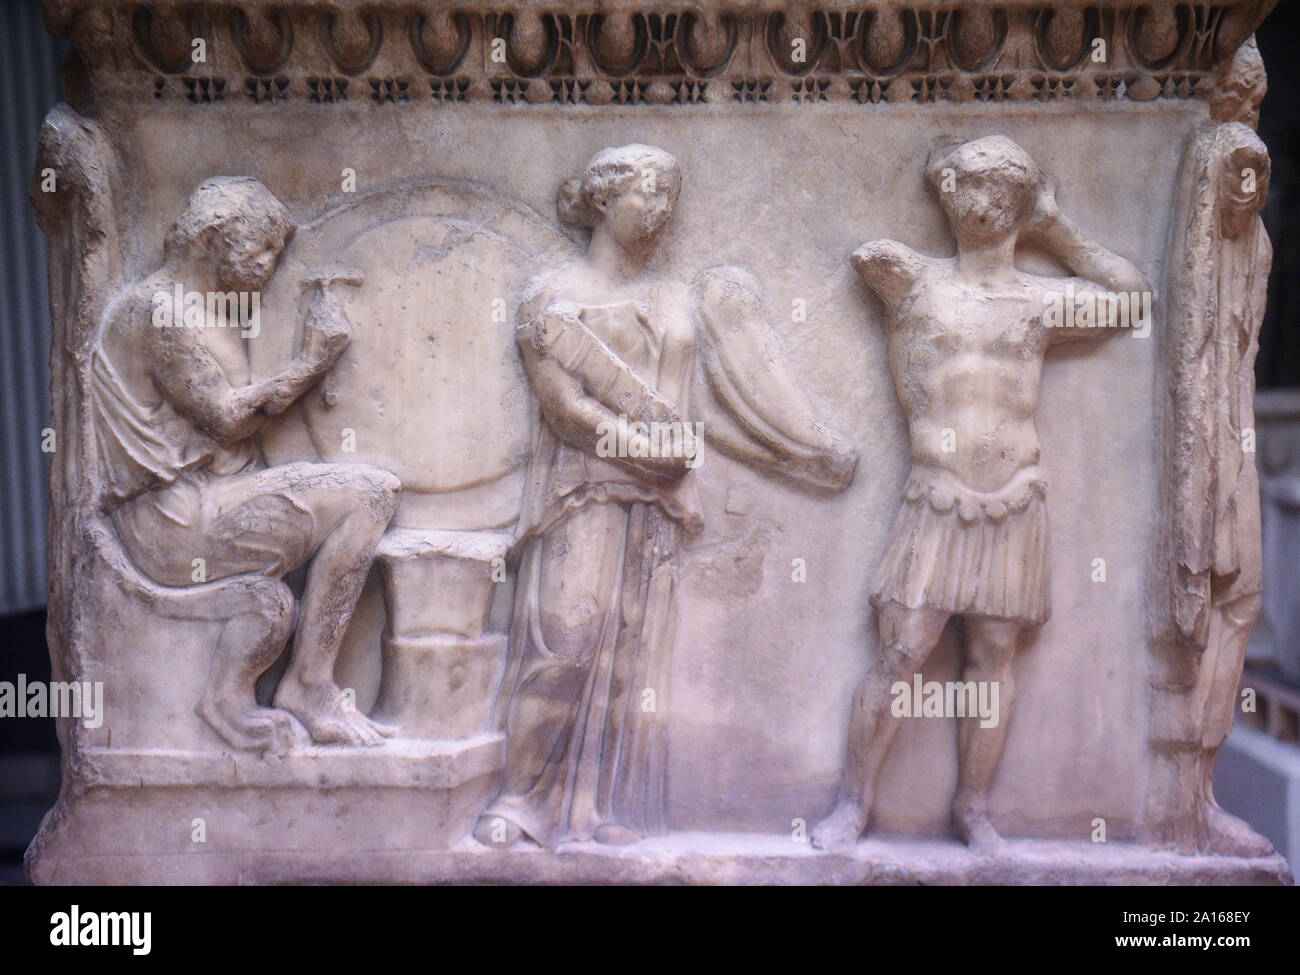 Dettagli su un scolpito sarcofago romano davanti alla Troy mostra presso il British Museum di Londra. Foto Stock